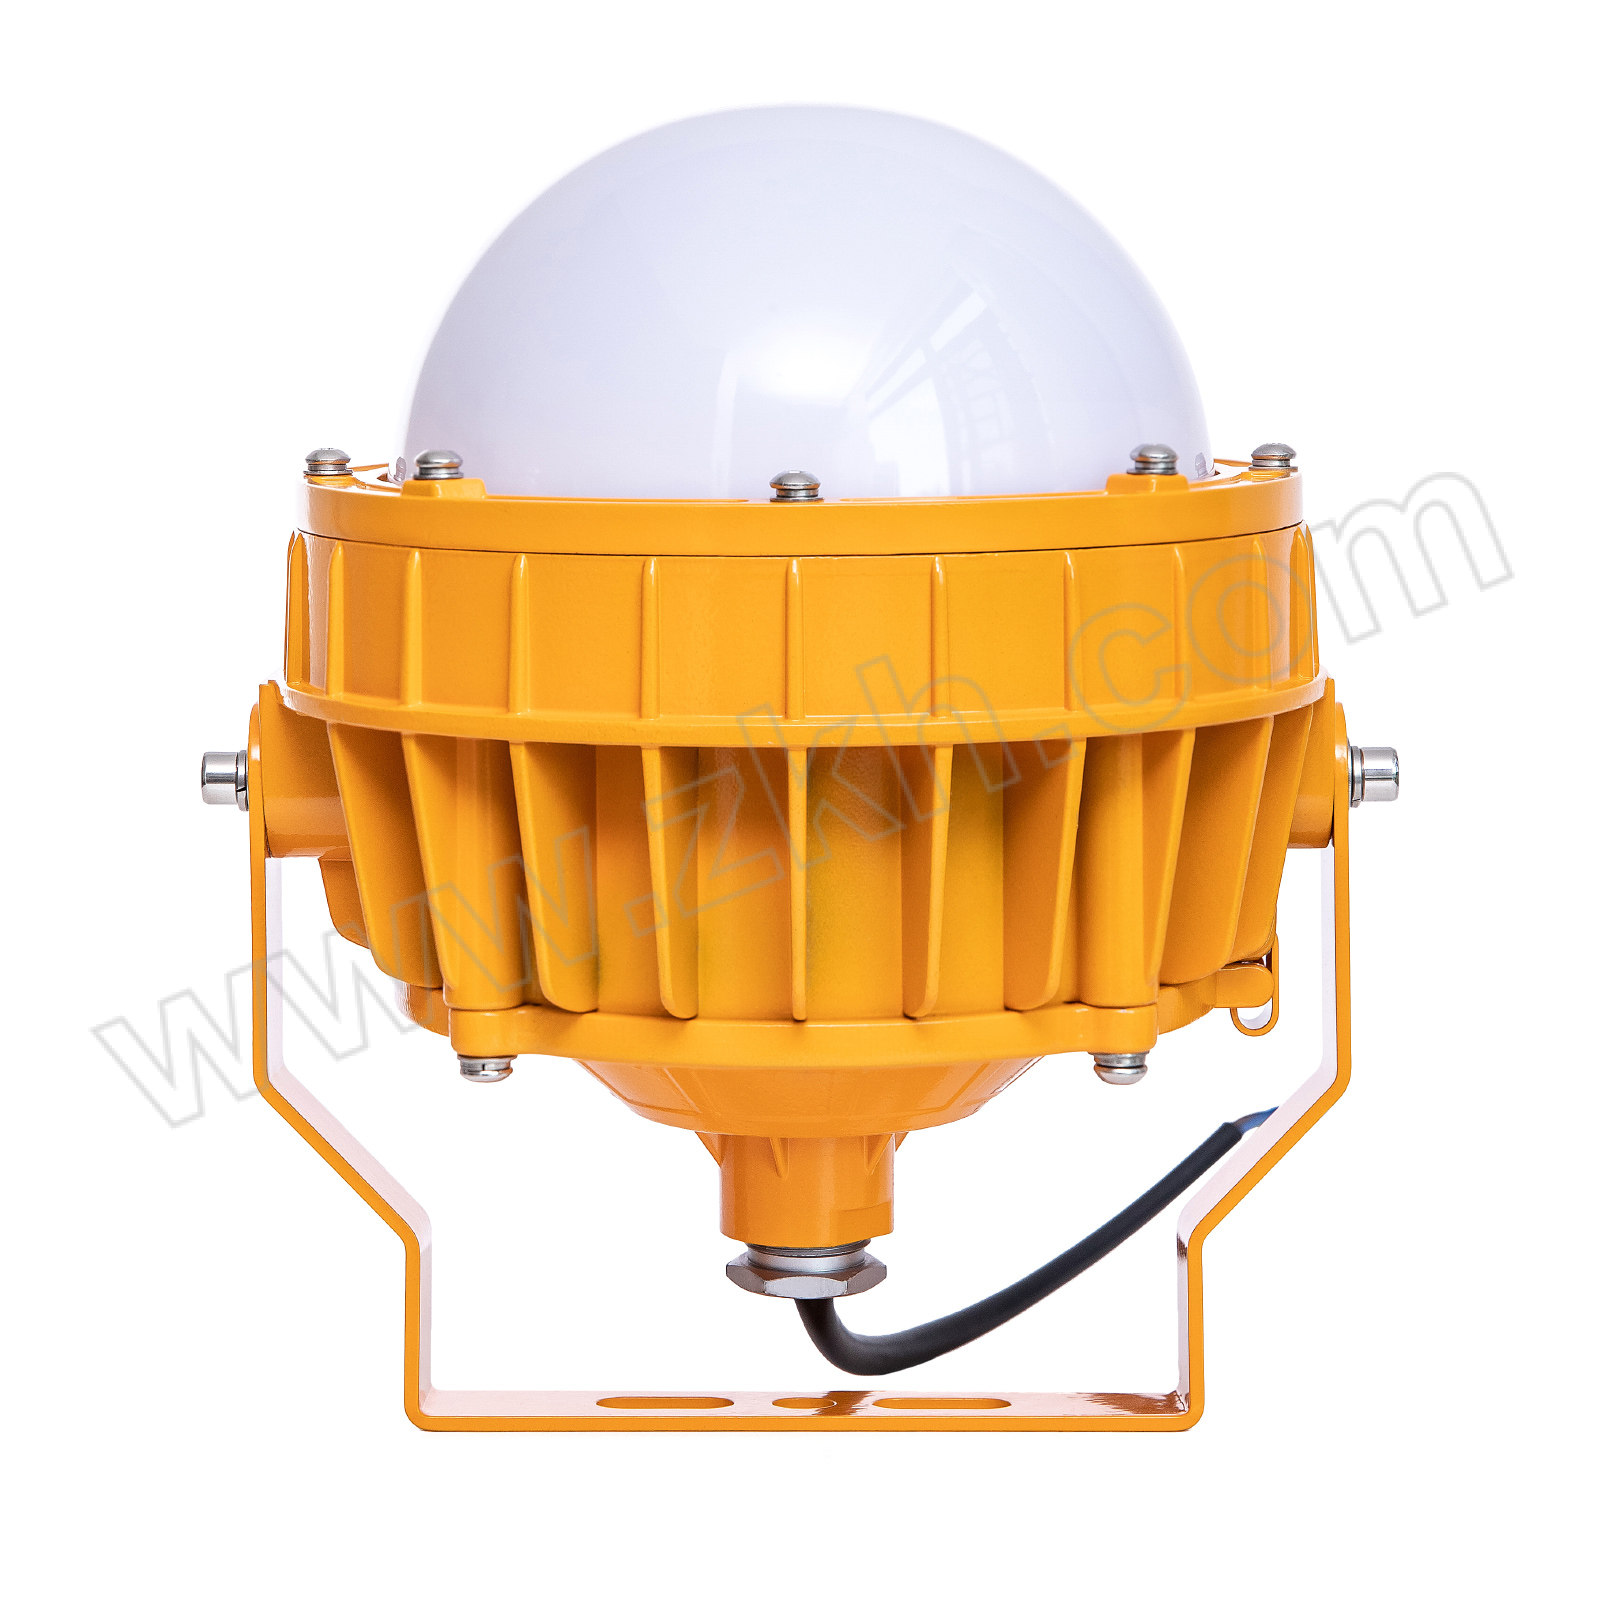 JQZM/晶全照明 LED防爆平台灯 BJQ8766 AC85V~265V 50W 6000~6500K±200K IIC等级防爆型式 黄色 1台